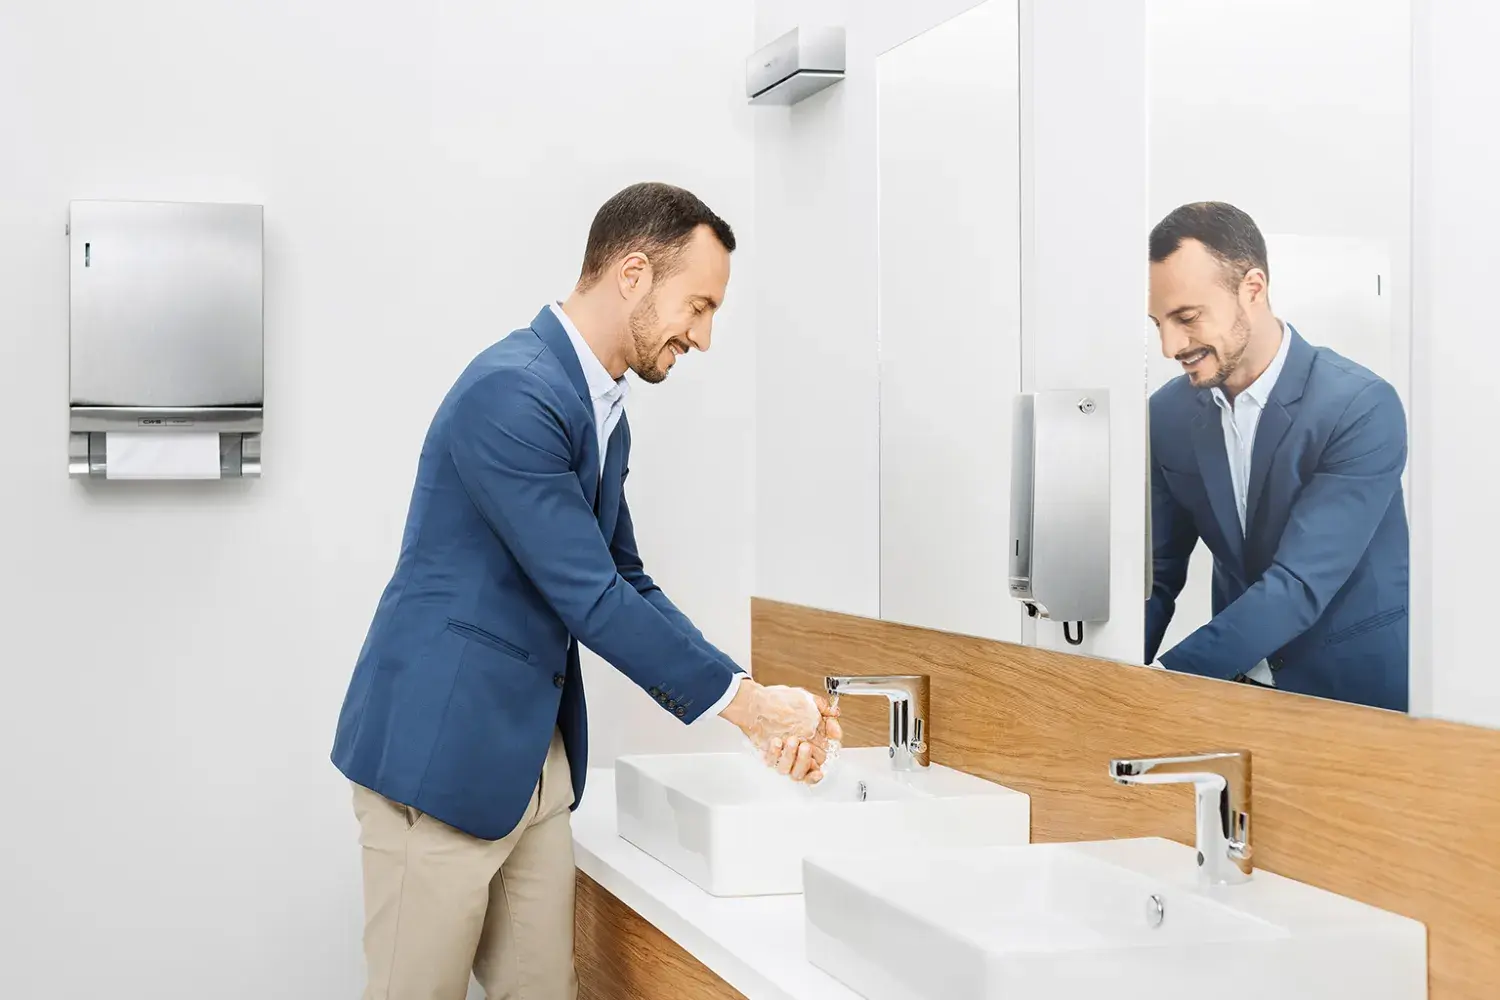 Ein Mann wäscht sich seine Hände in einem mit CWS-Produkten ausgestattetem Bad.